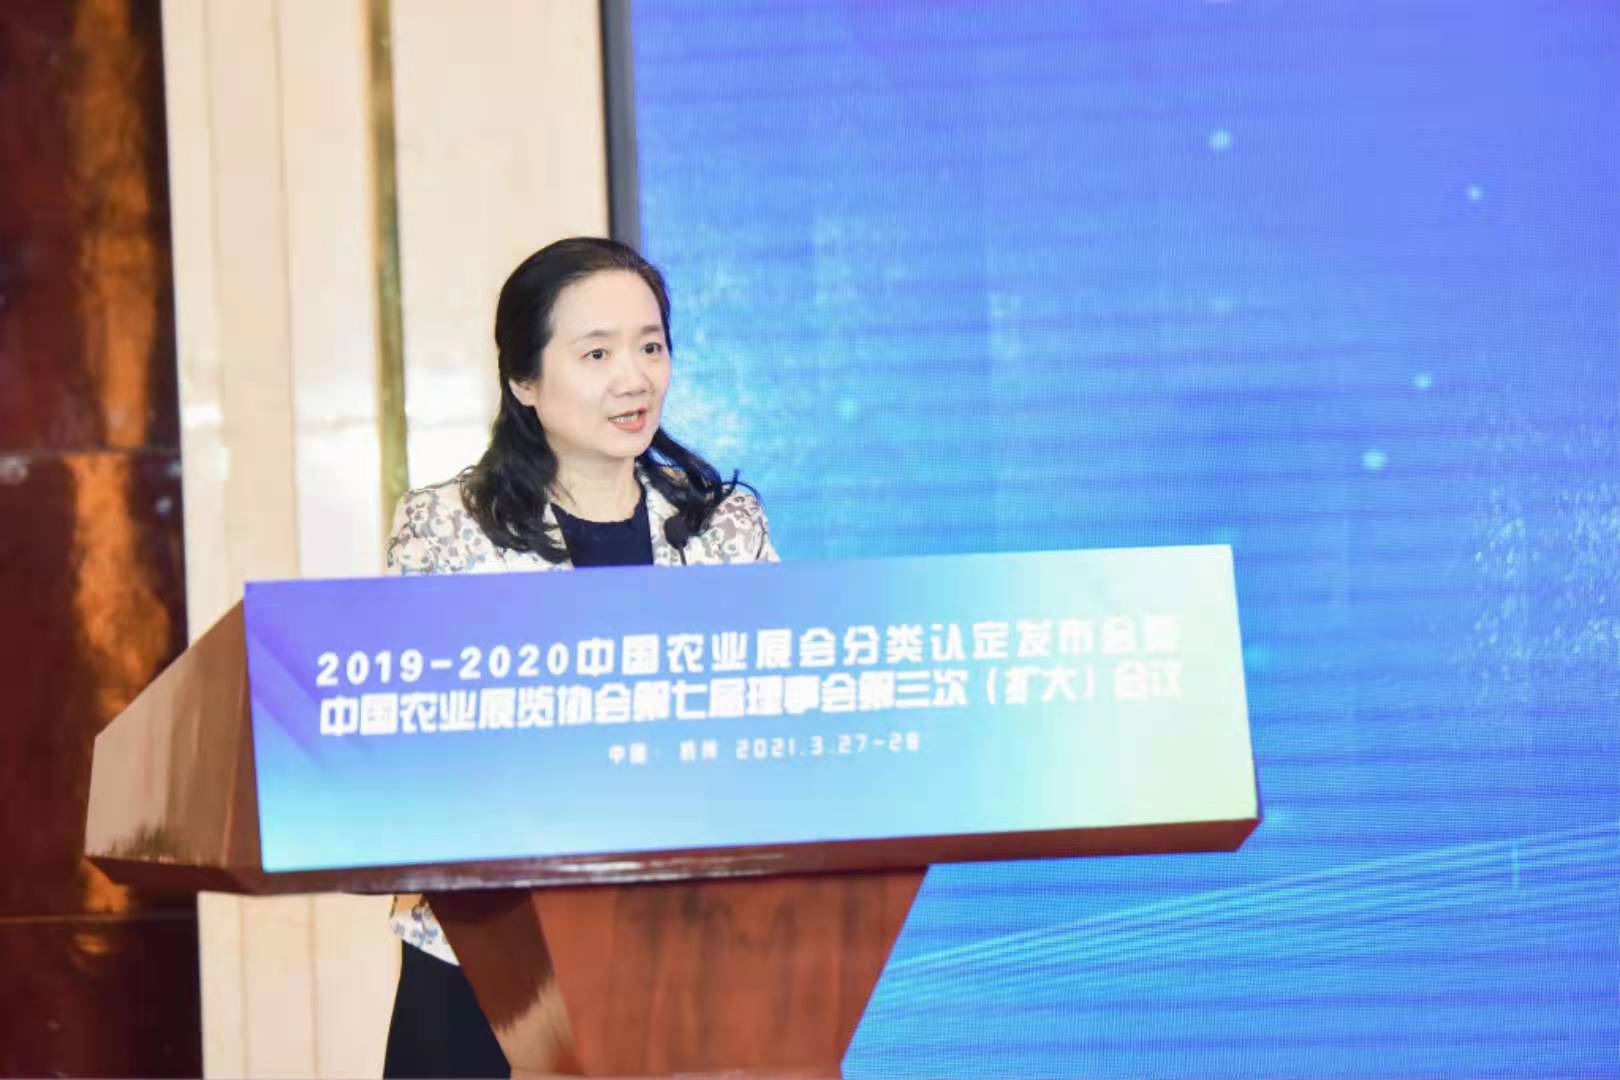 31会议成为《中国农业展览综合服务平台》独家合作伙伴